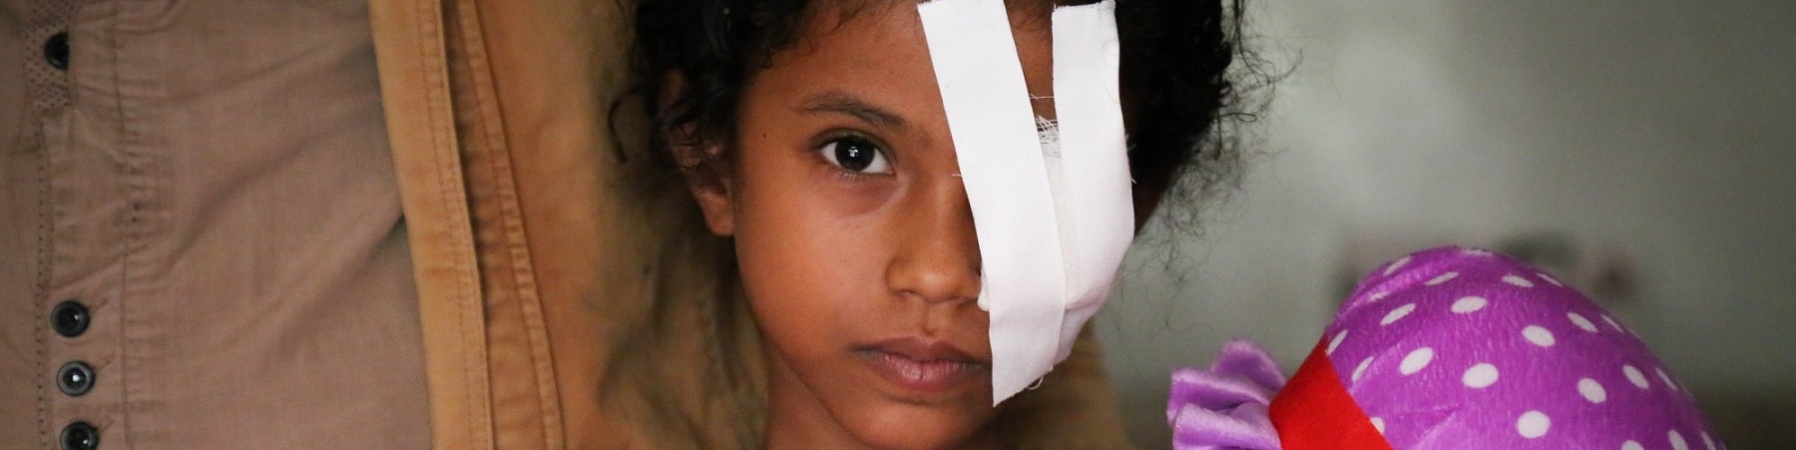 Bambina yemenita con bende sull'occhio sinistro abbraccia la sua bambola